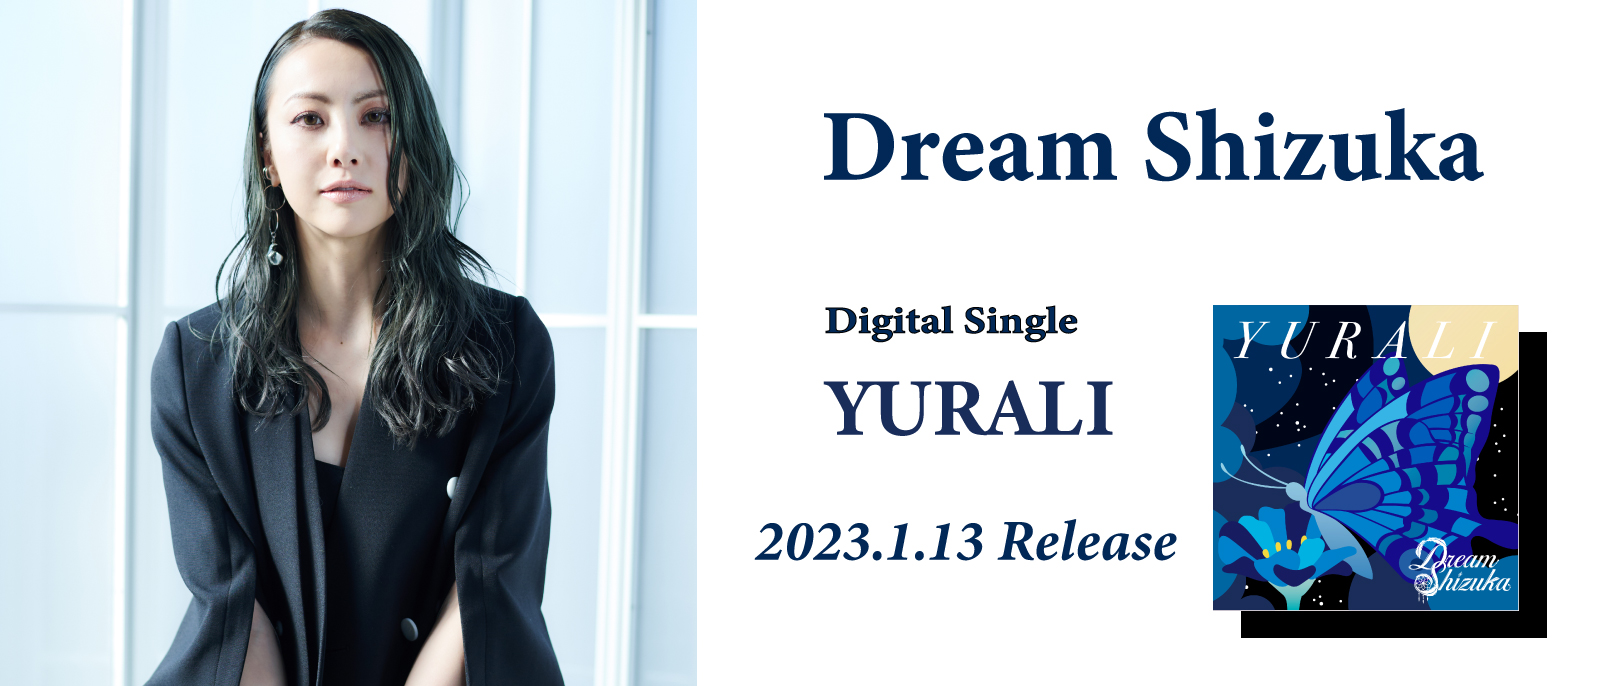 Dream Shizuka 『YURALI』